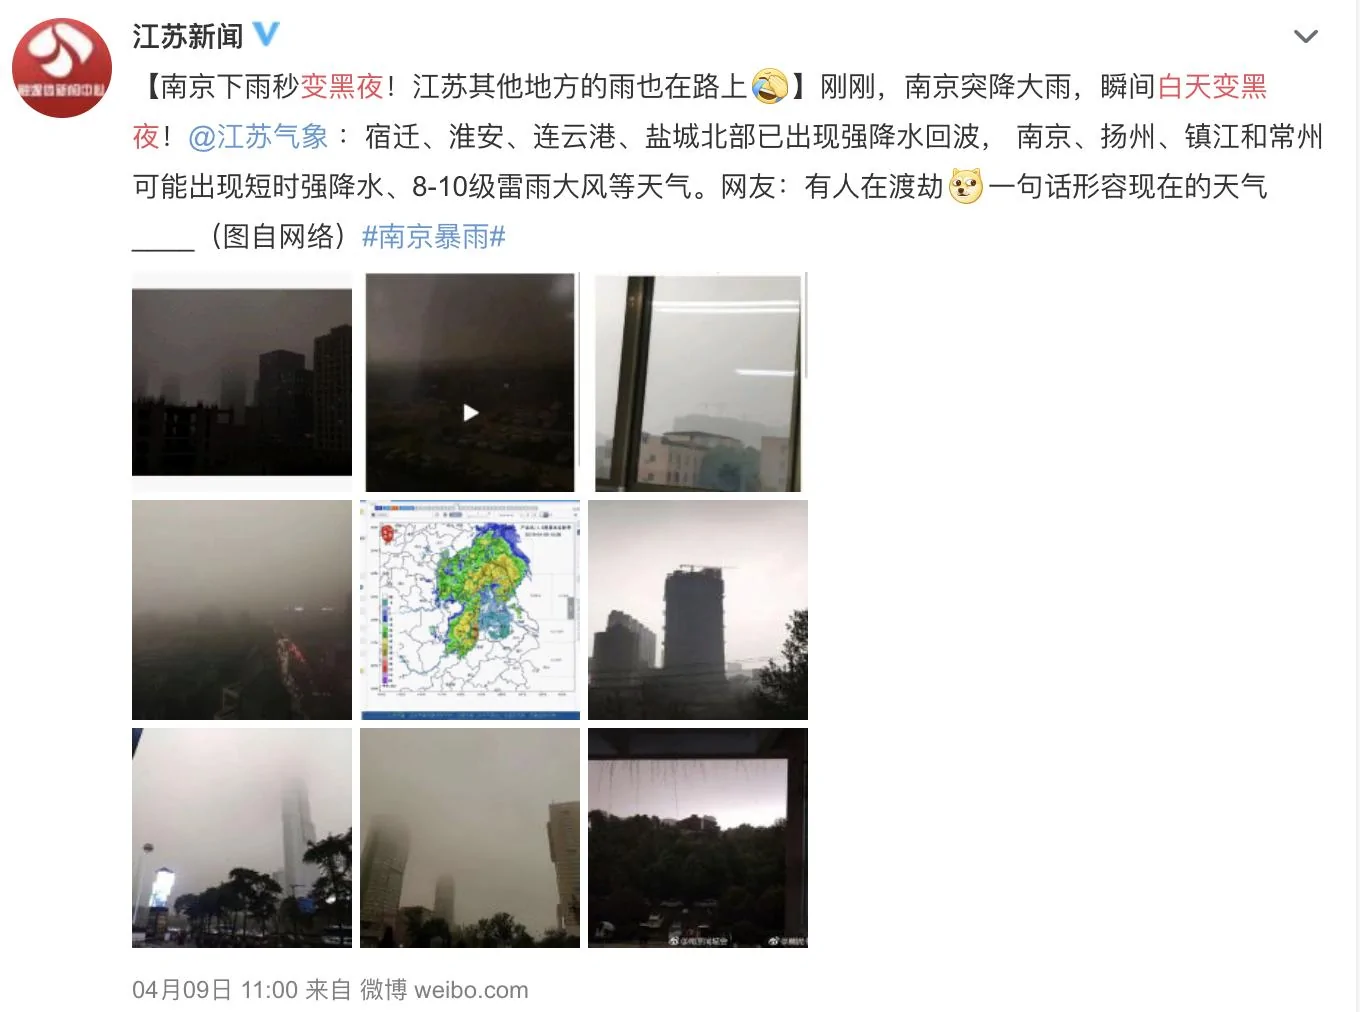 武汉大暴雨白天秒变黑夜 | 极目新闻